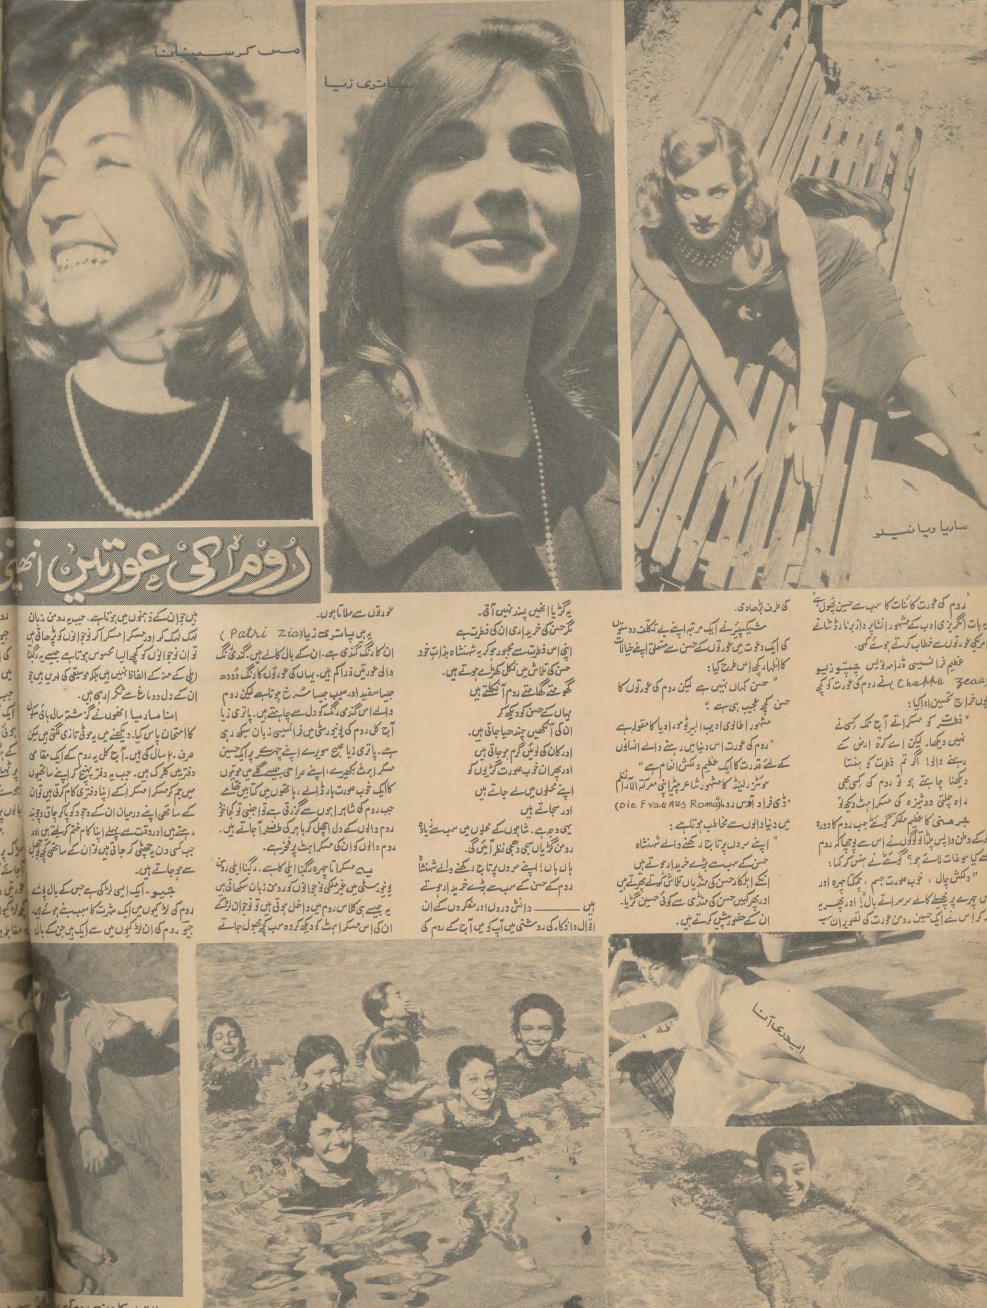 Akhbar-e-Jahan (May 1, 1968) - KHAJISTAN™